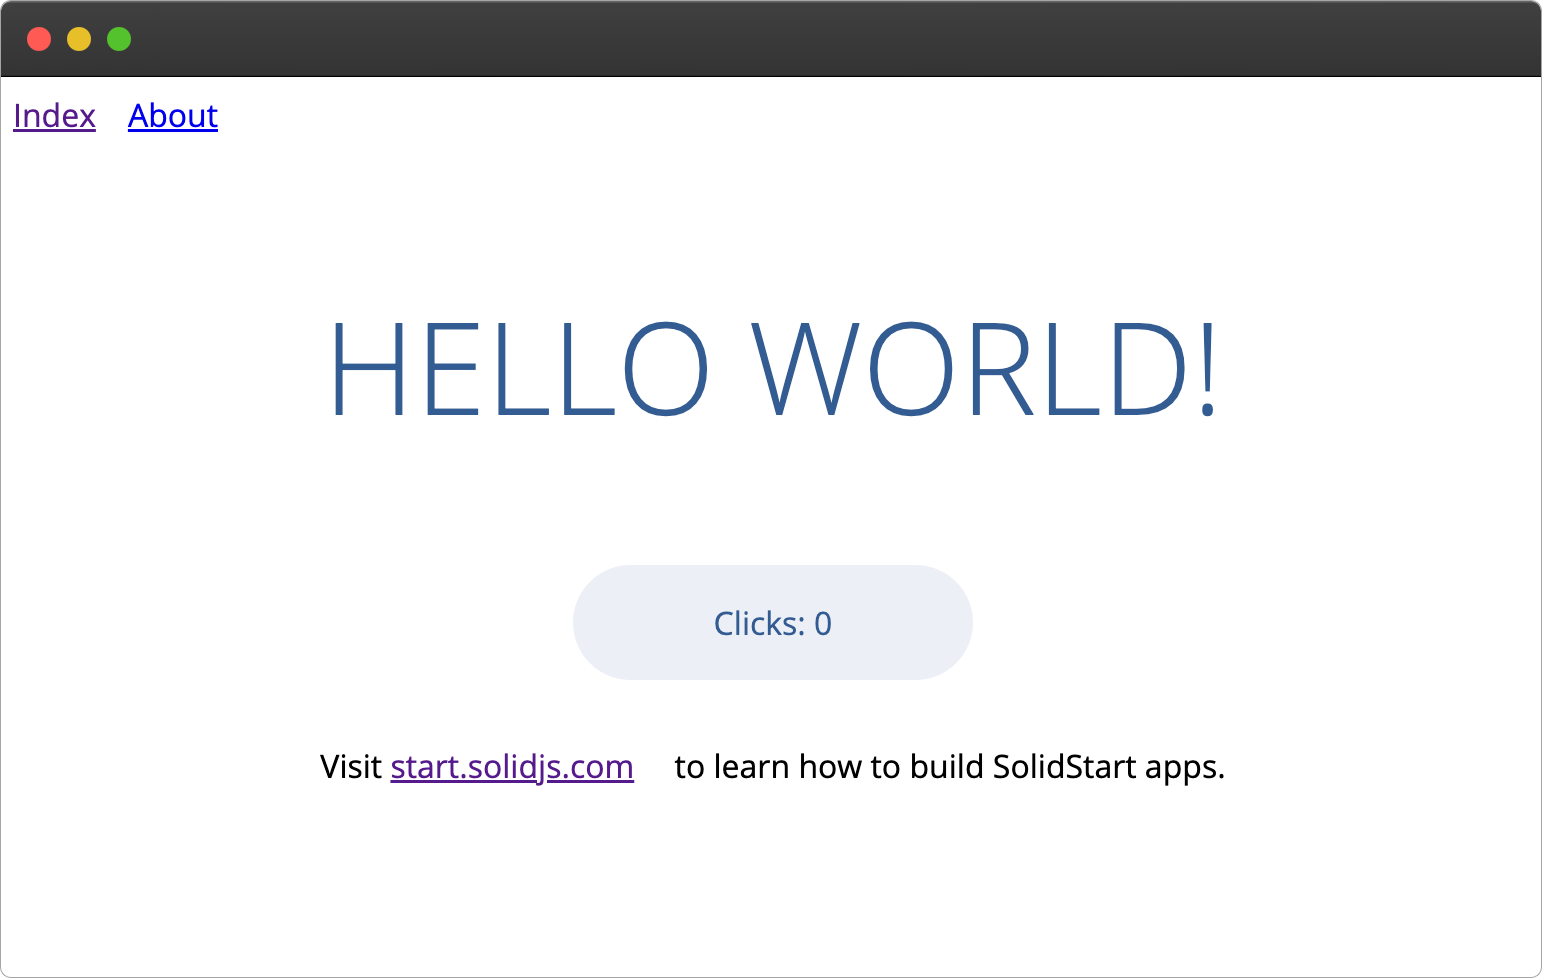 SolidStart demo app